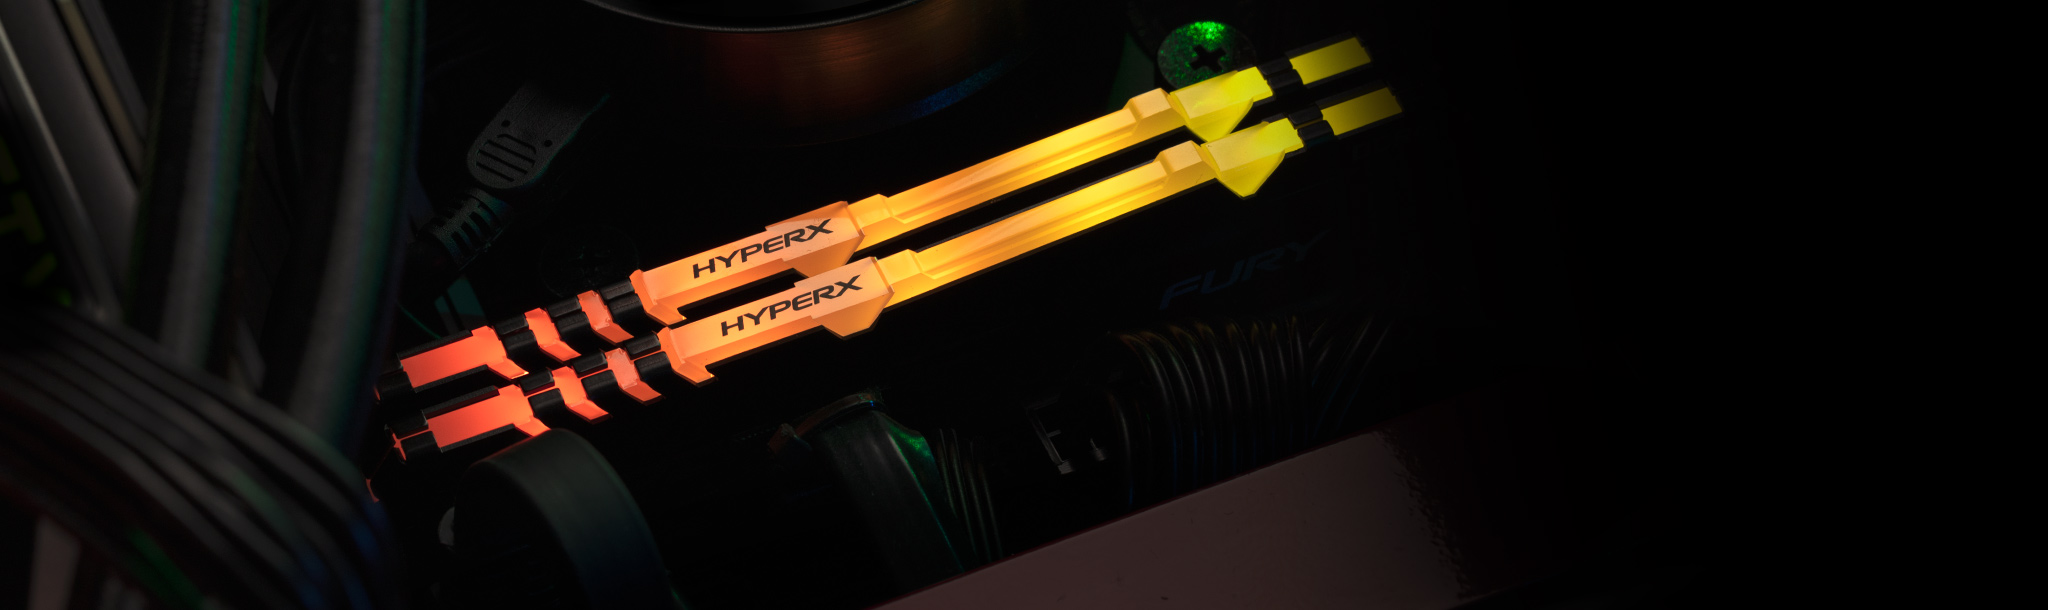 内部に HyperX RGB メモリを搭載したデスクトップゲーミング PC。